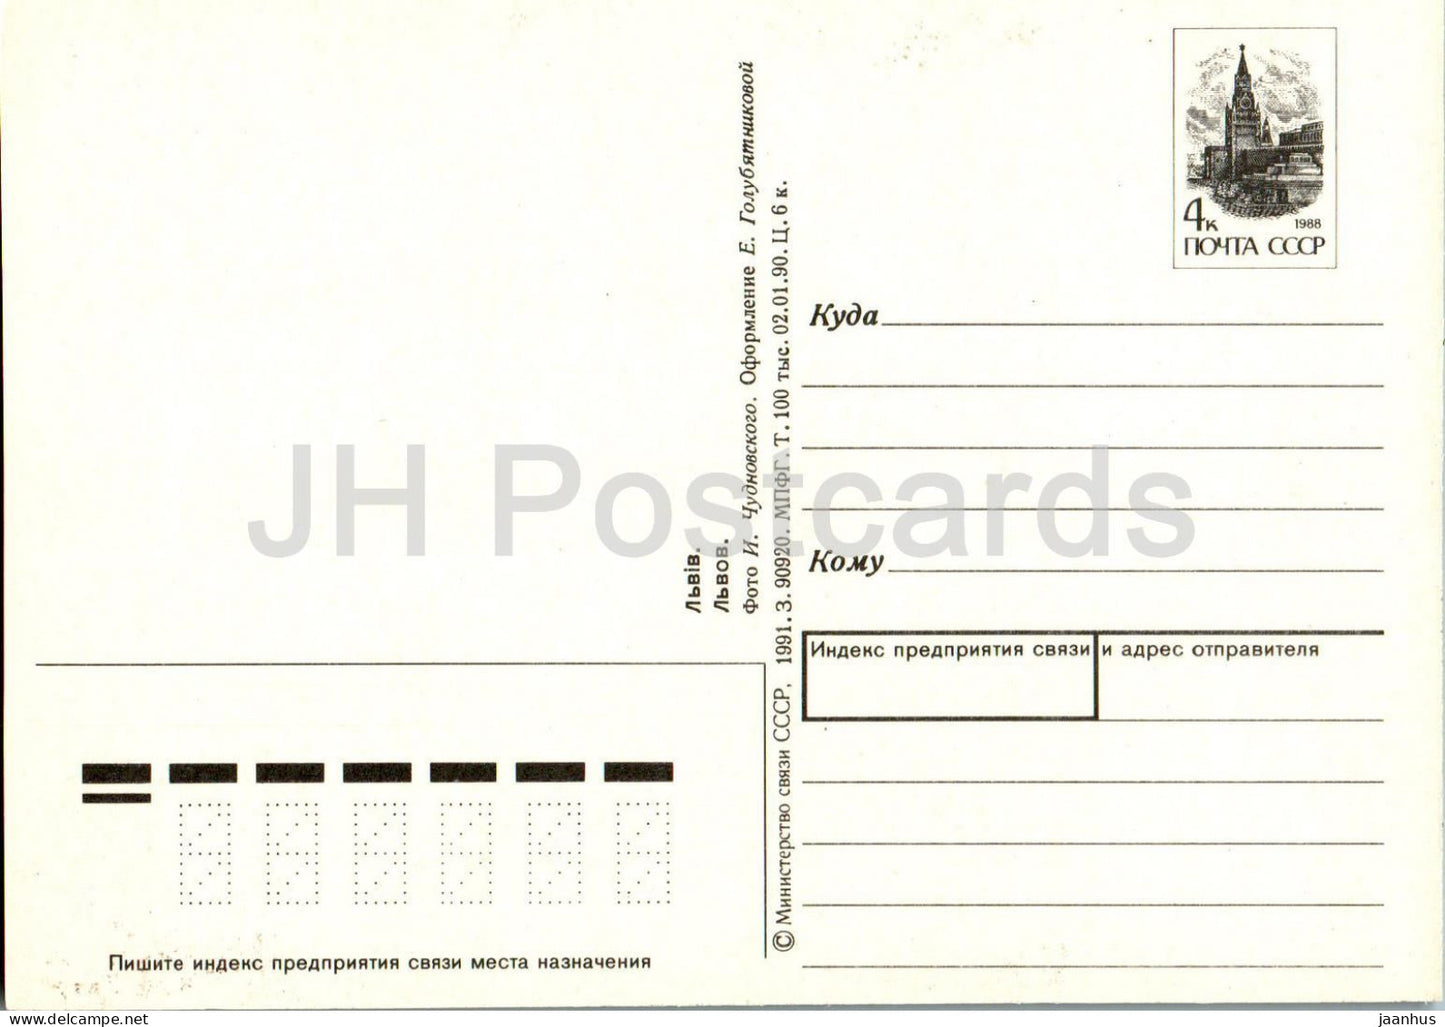 Lviv - Pharmacy Museum - tortoise - postal stationery - 1991 - Ukraine USSR - unused